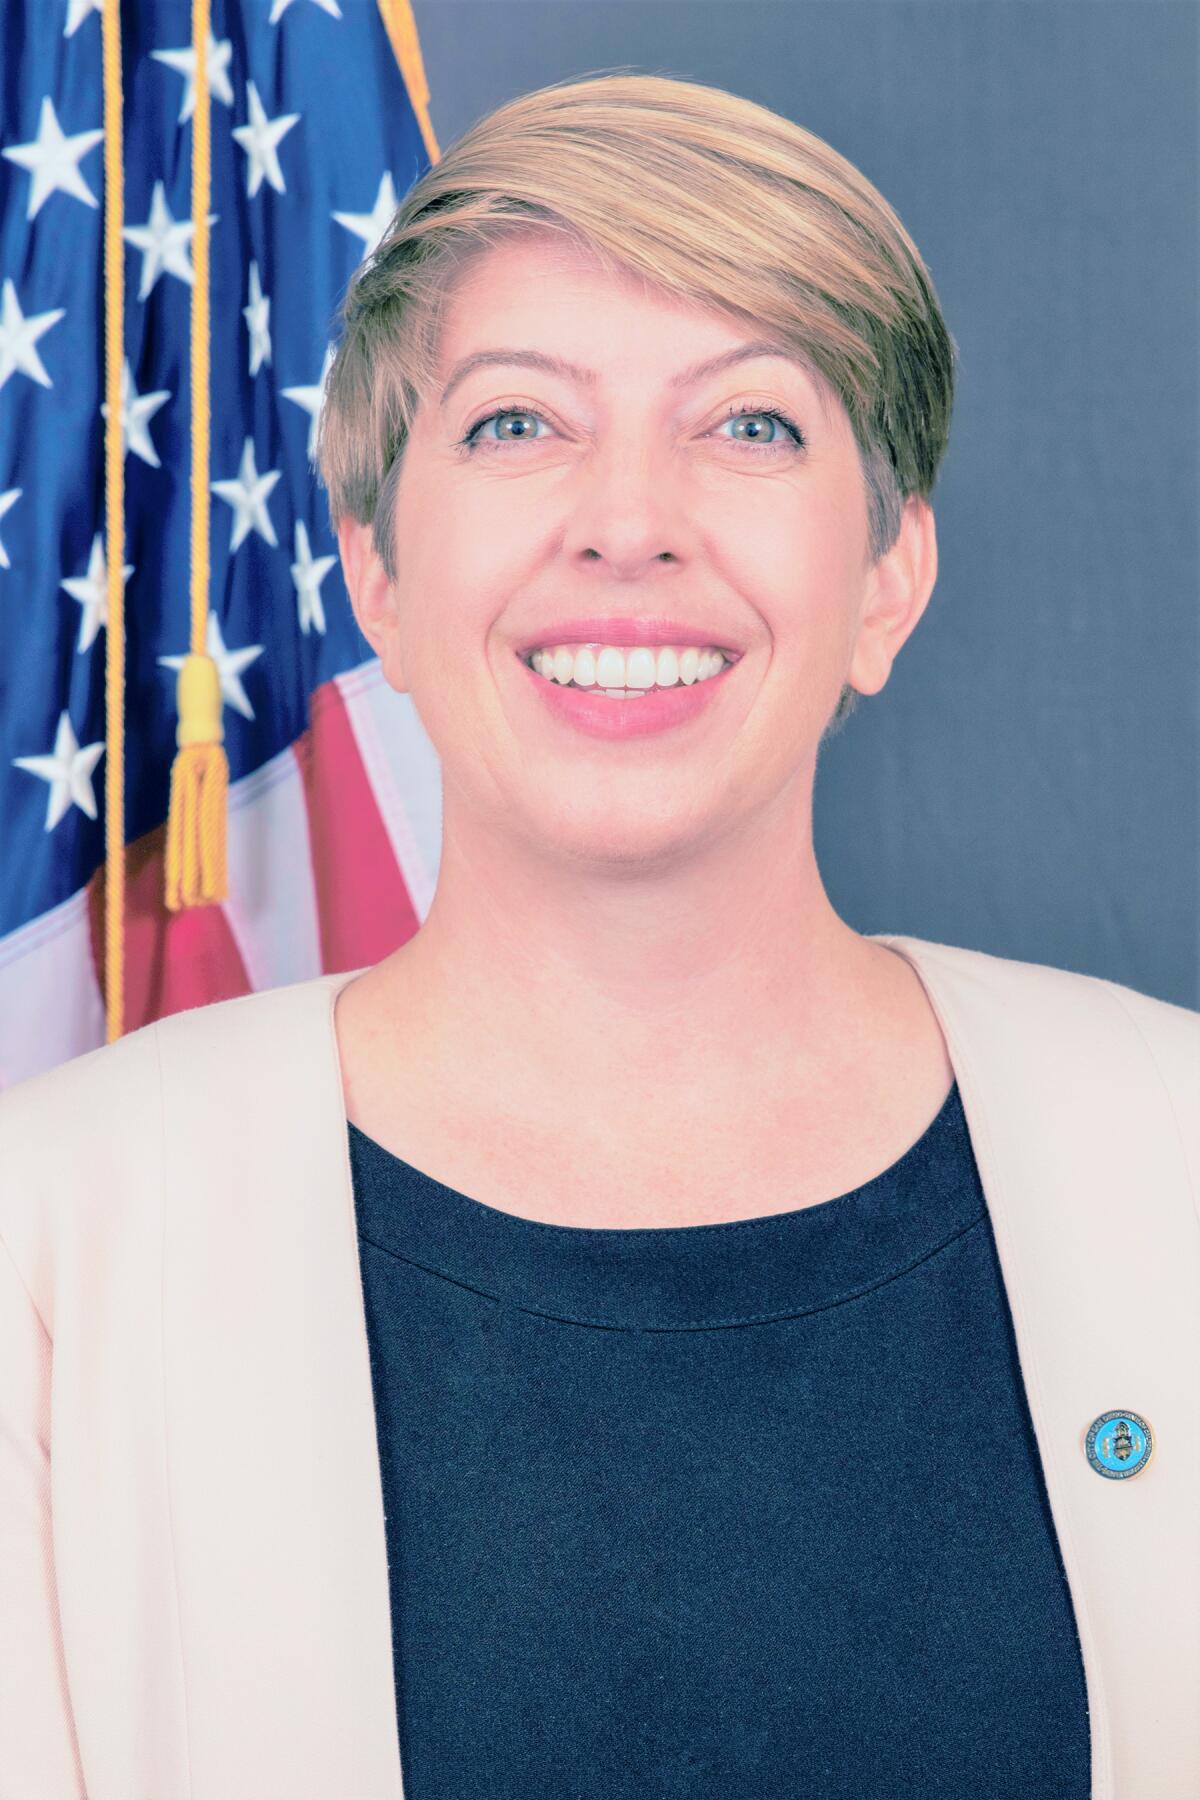 San Diego City Councilwoman Marni von Wilpert